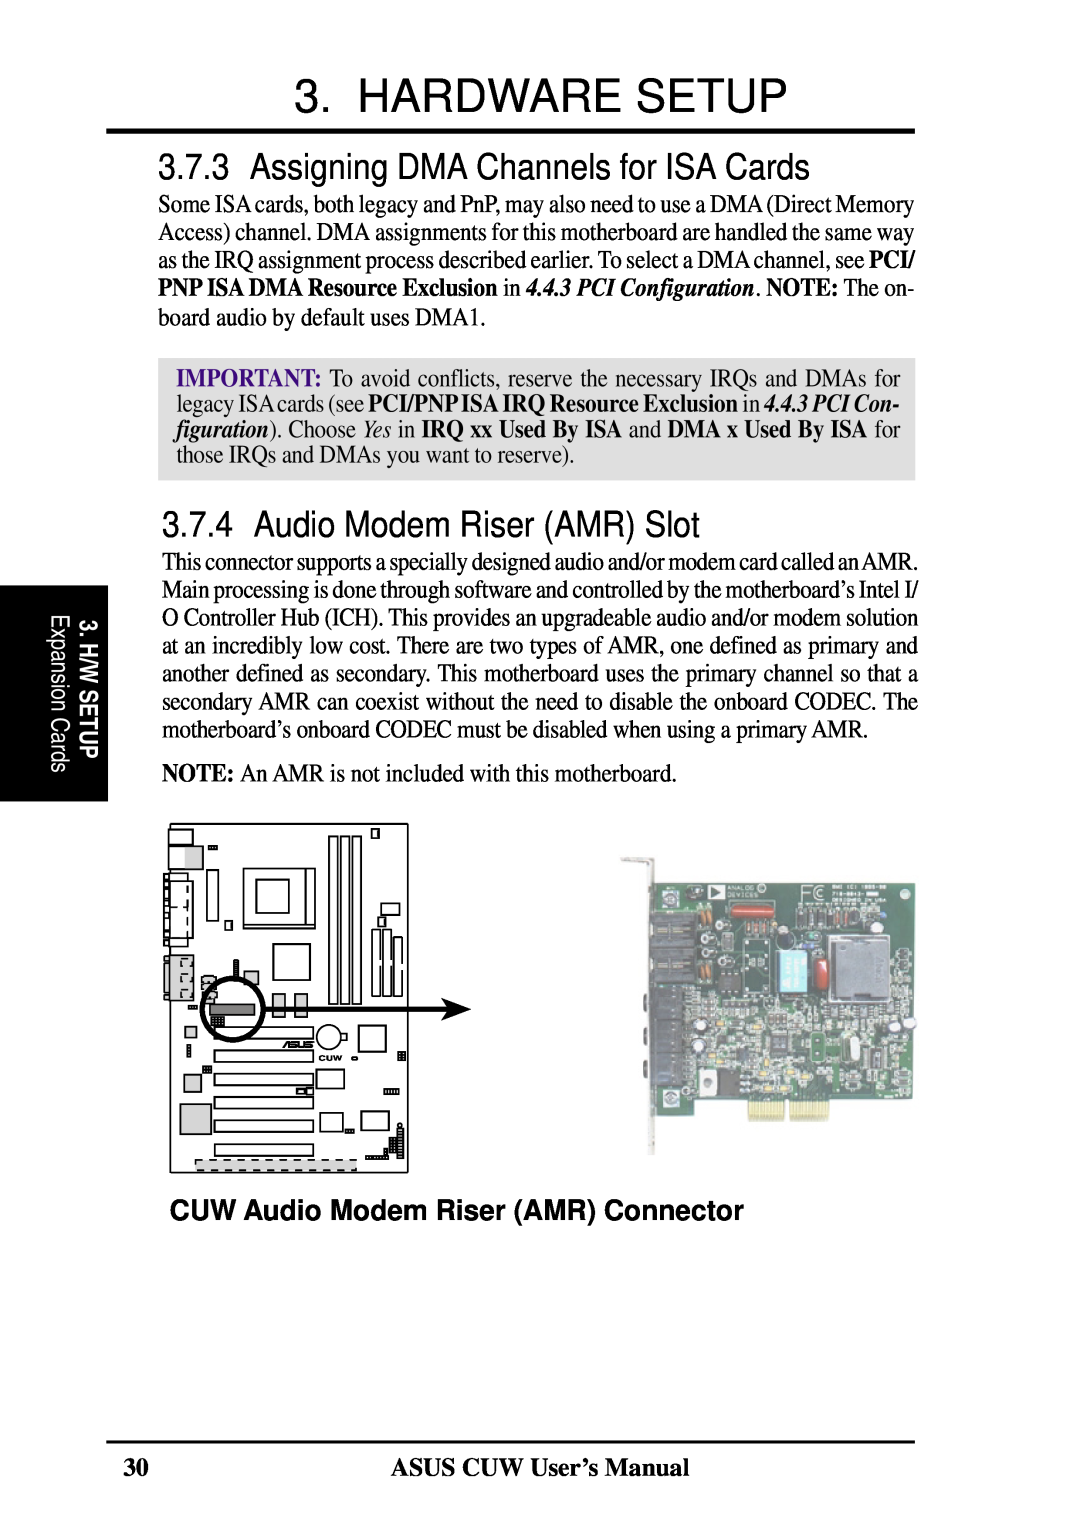 Asus 810 user manual Assigning DMA Channels for ISA Cards, Audio Modem Riser AMR Slot, Hardware Setup, Expansion Cards 